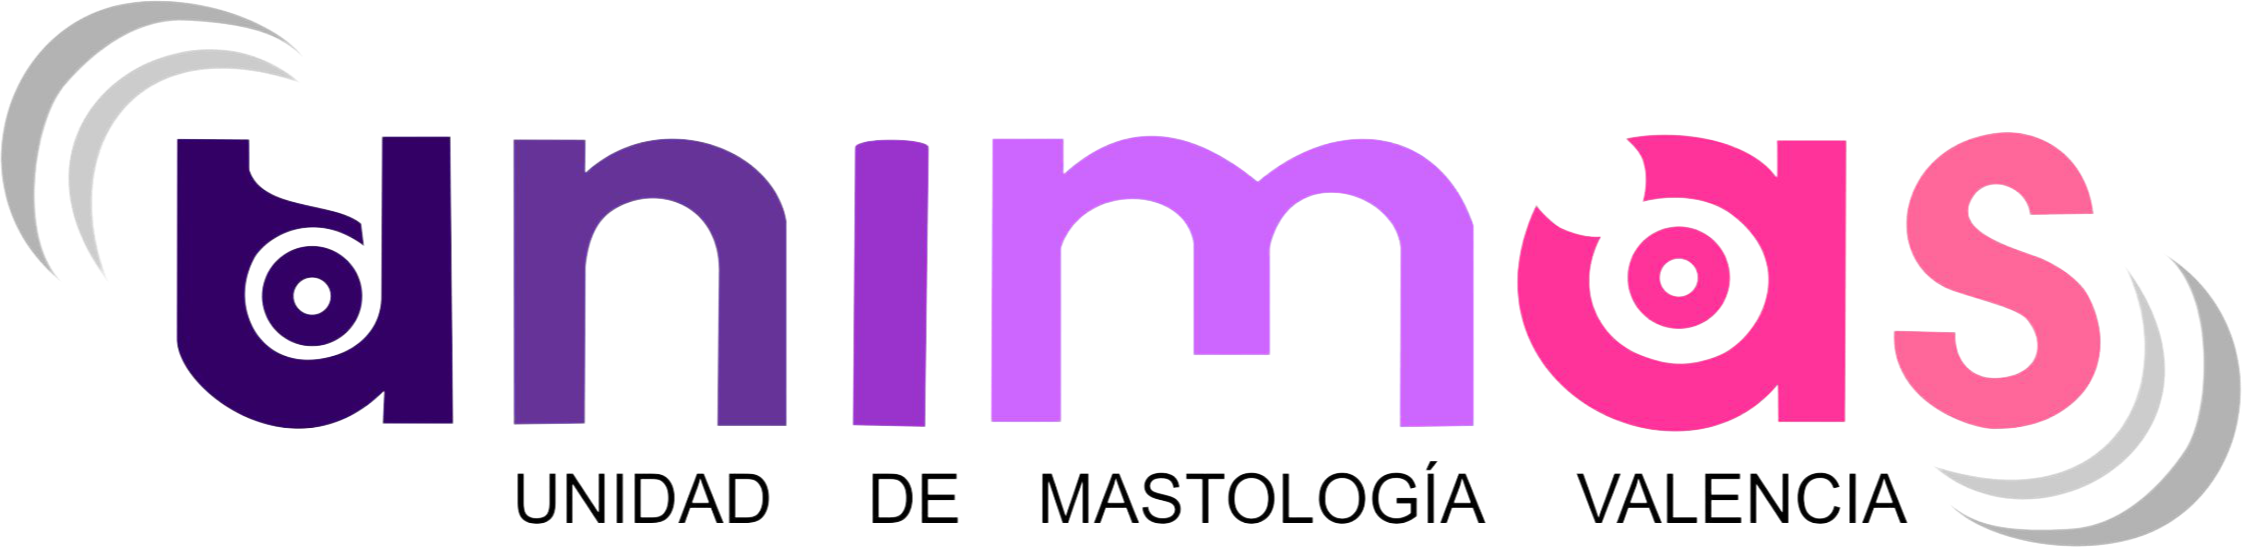 Unimas Valencia - Unidad de mastología - Venezuela - Logotipo